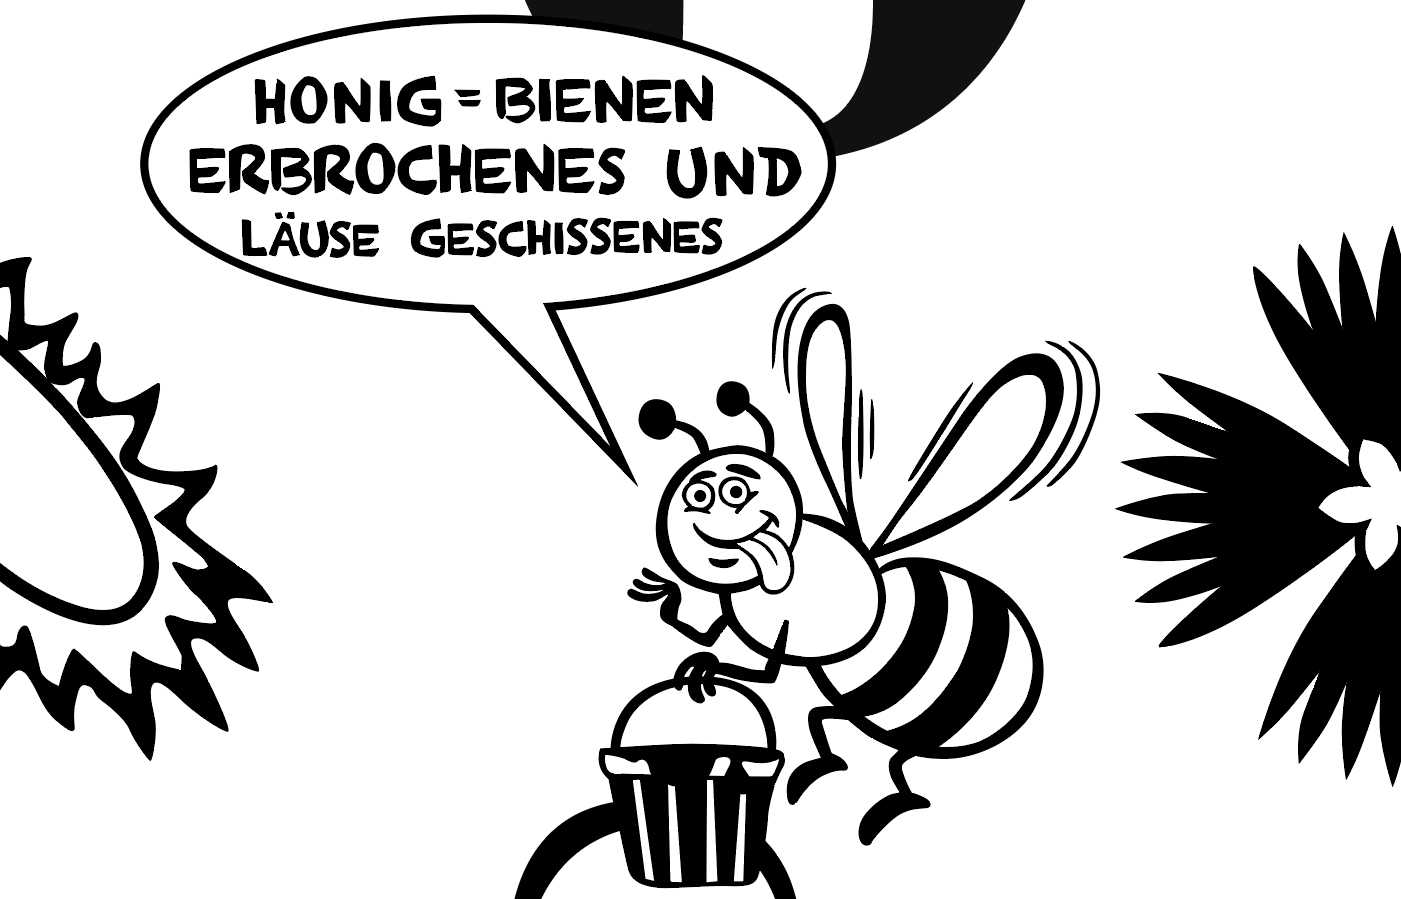 Biene mit Sprechblase 'Honig = Bienen Erbrochenes und Bienen Geschissenes'